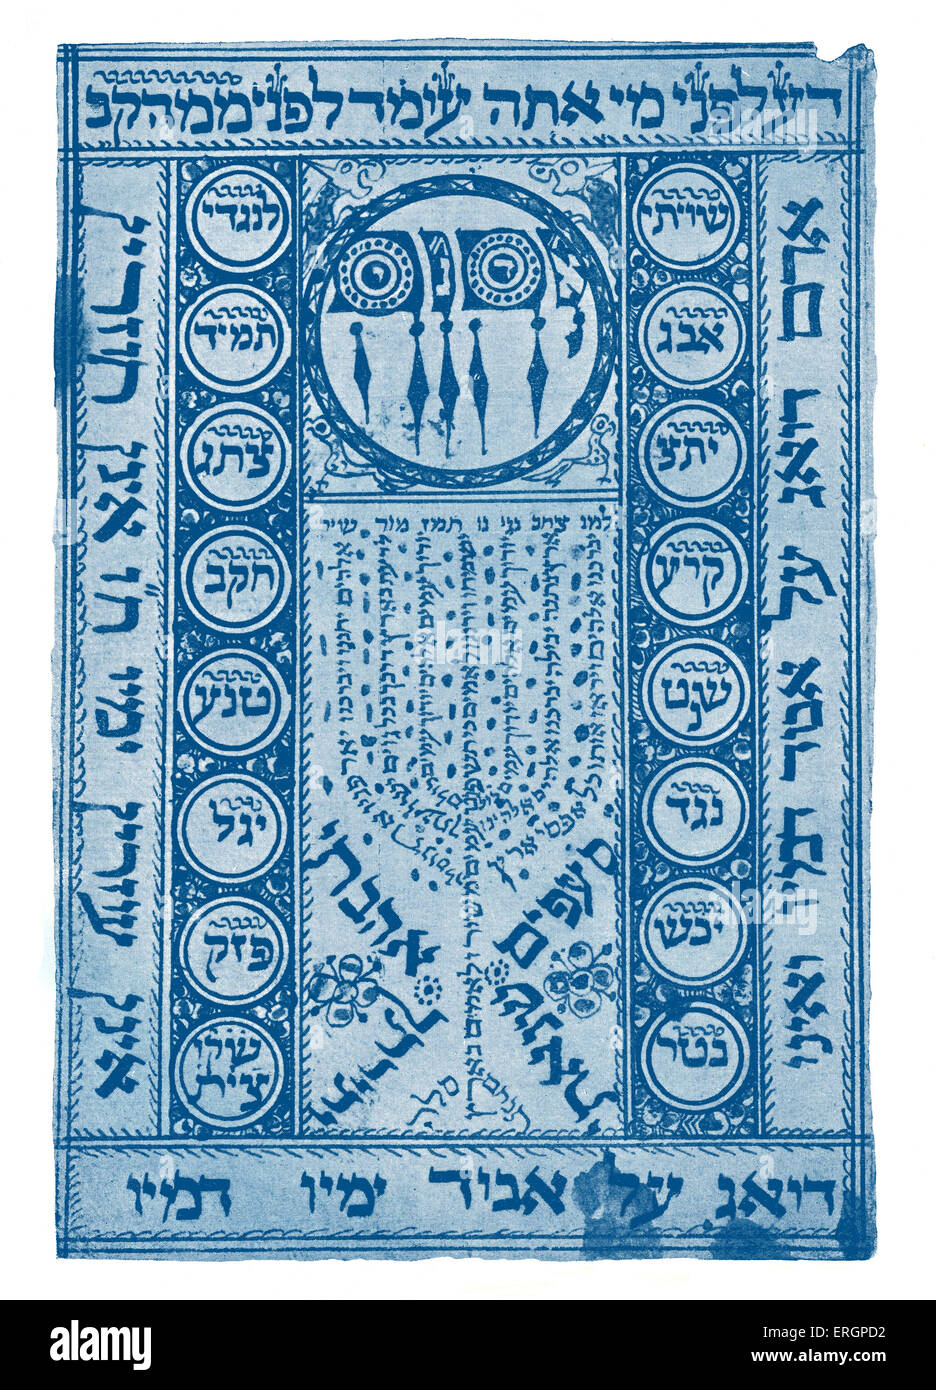 Amulette de la kabbale 17ème siècle. Portrait de forme. Le chandelier à sept branches design est composé de mots. Étude de la Jewish Banque D'Images